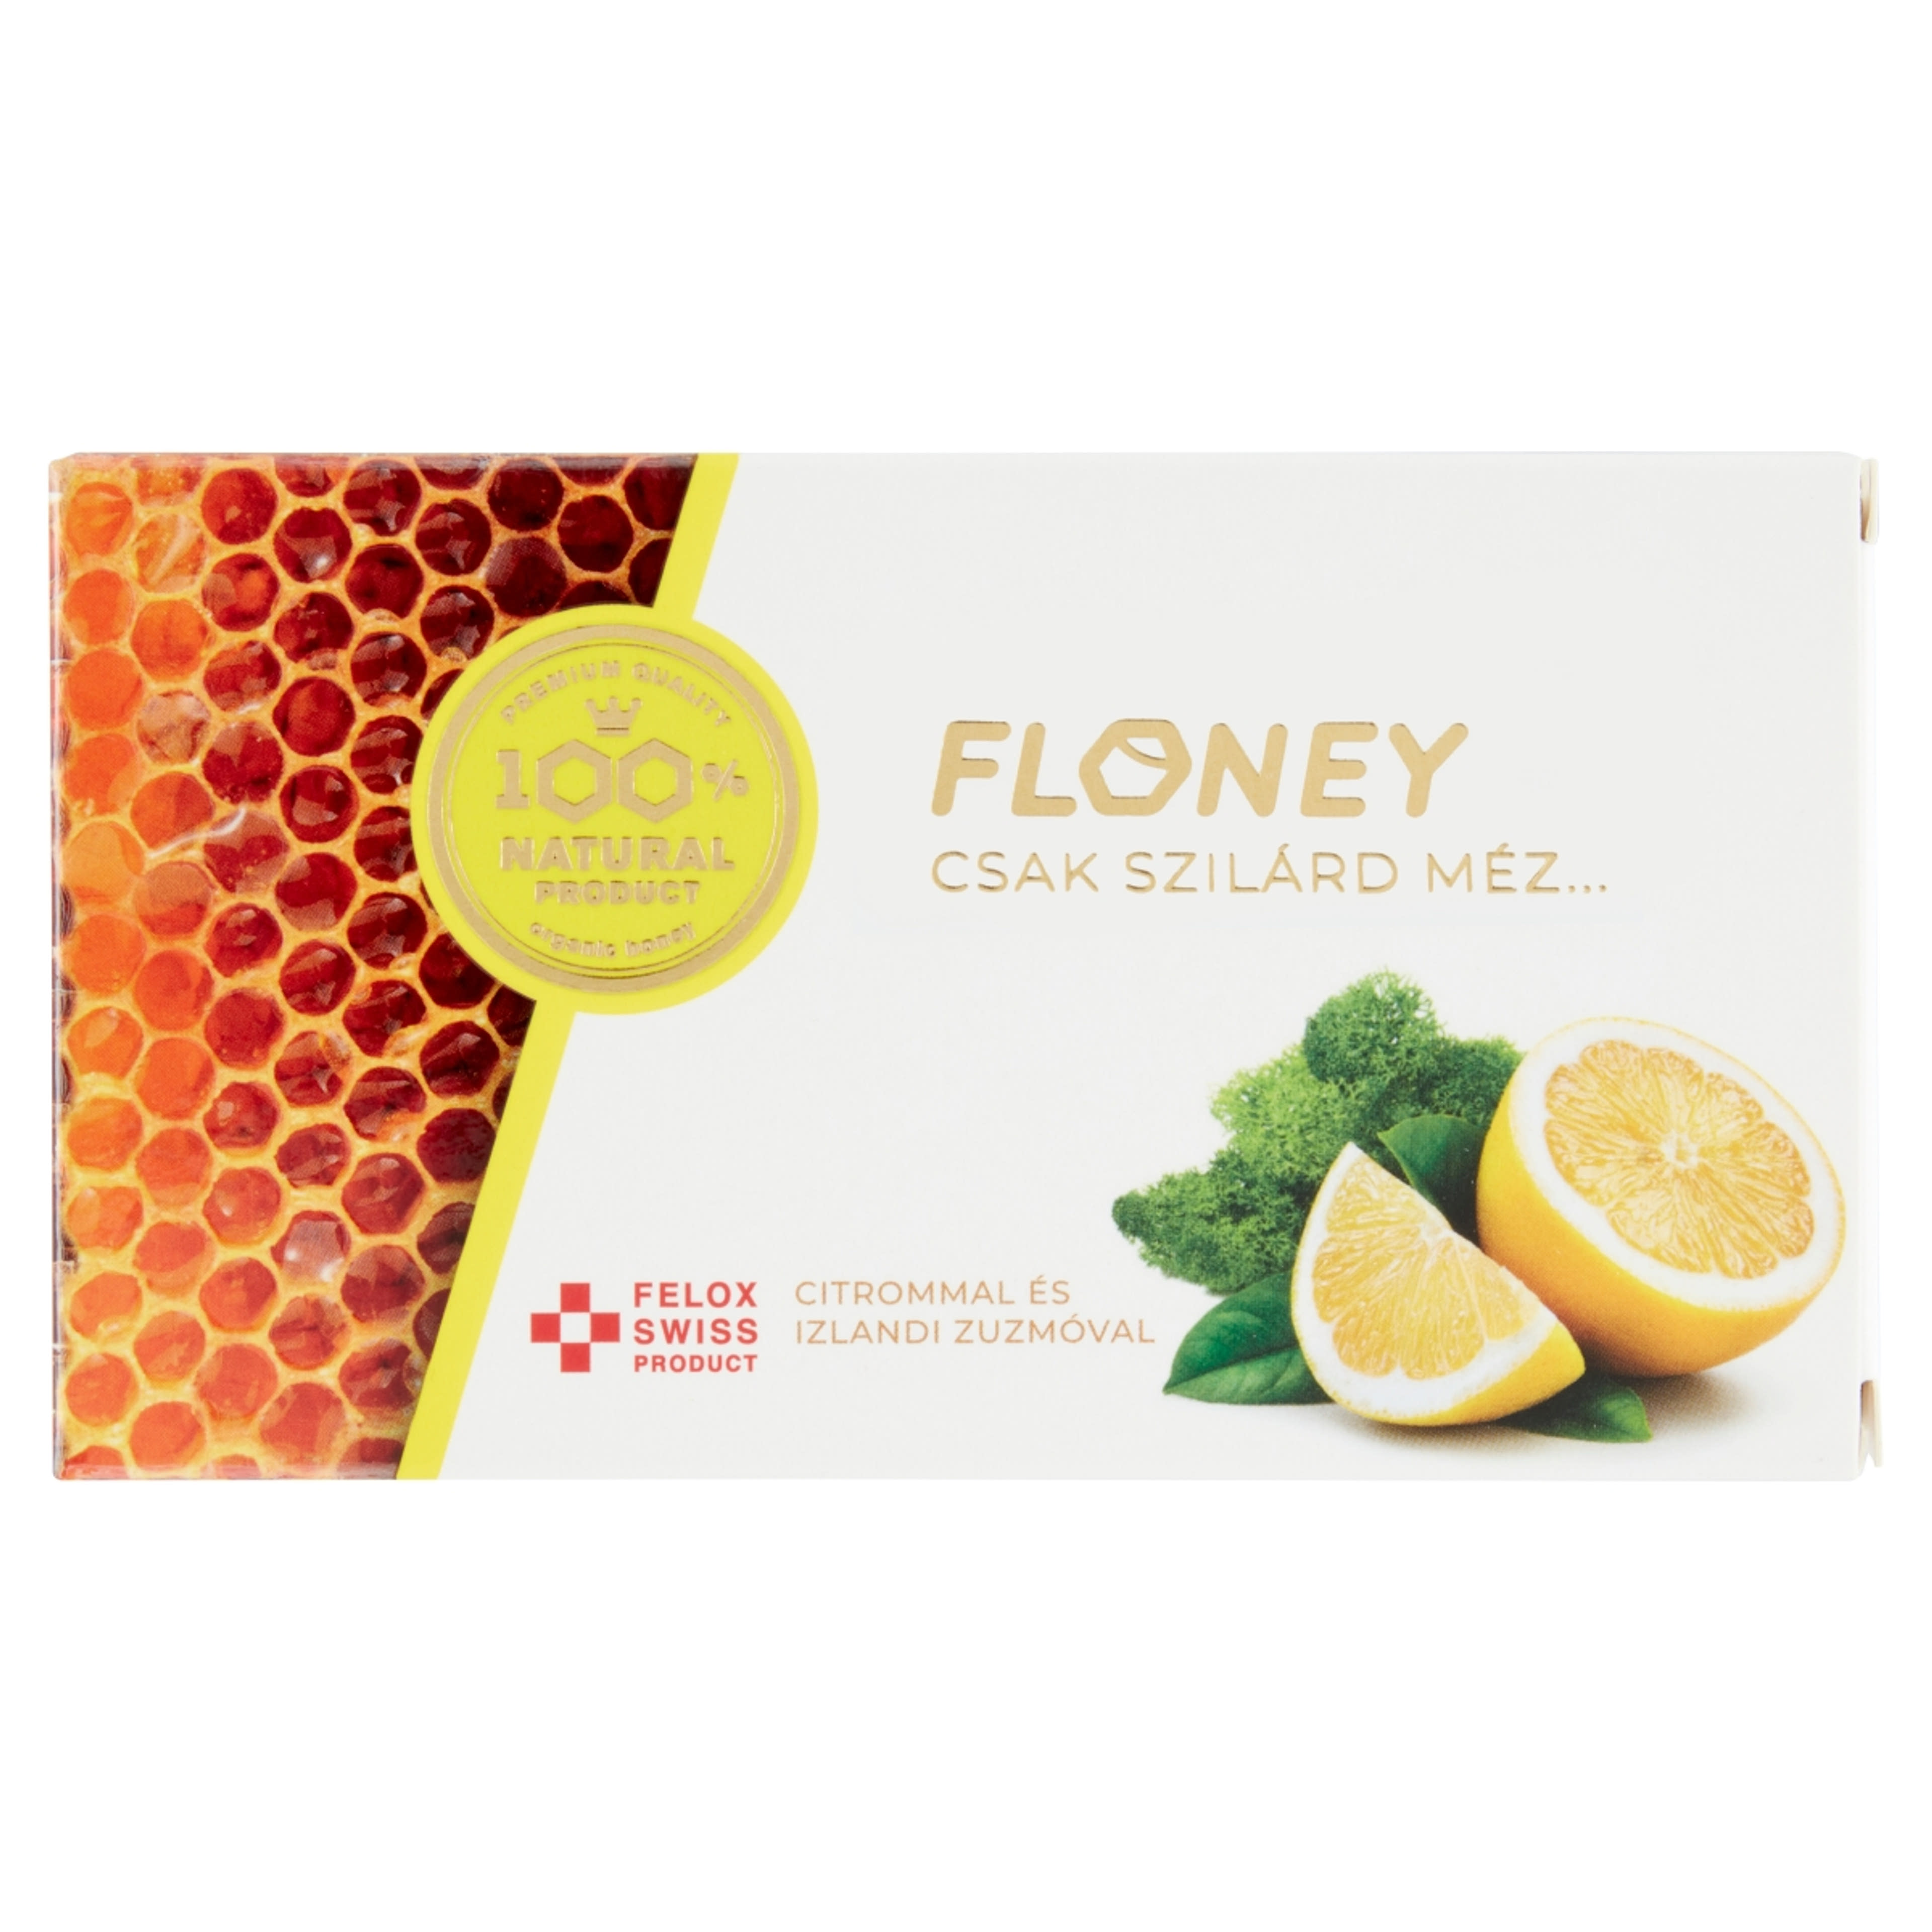 Floney citrom mézpasztilla 18 db - 38 g-1